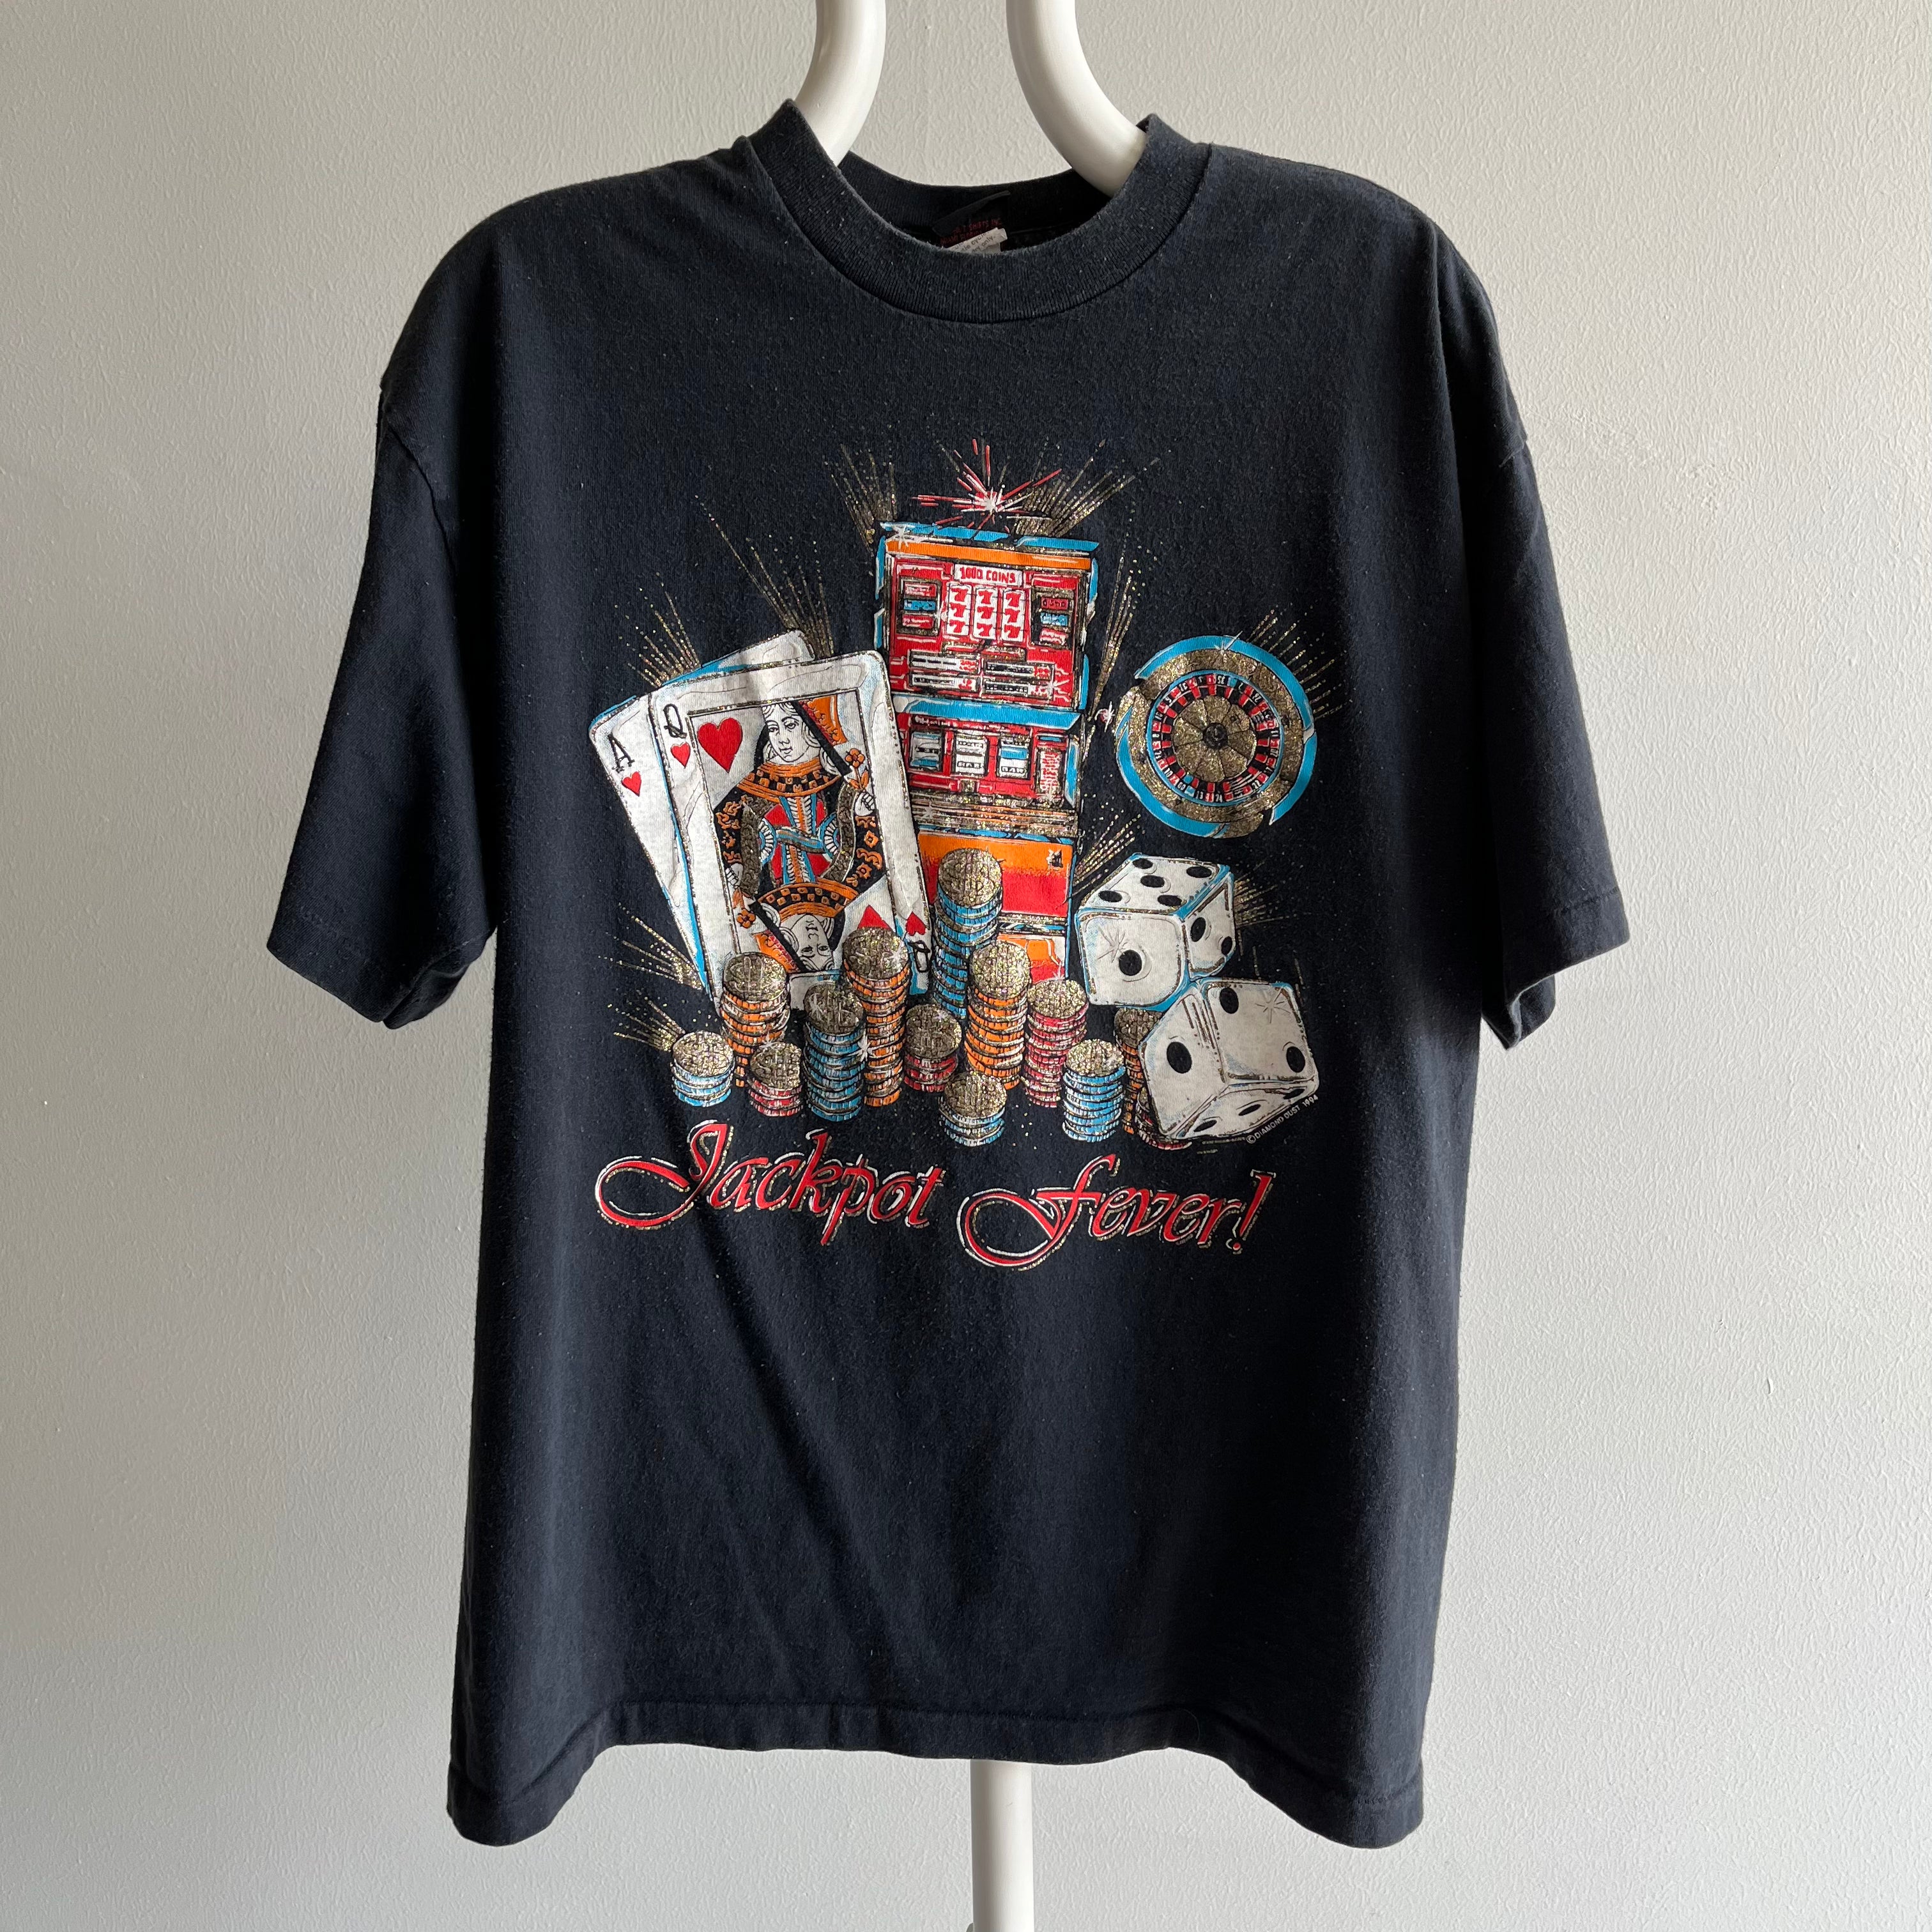 1994 Jackpot Fever T-Shirt